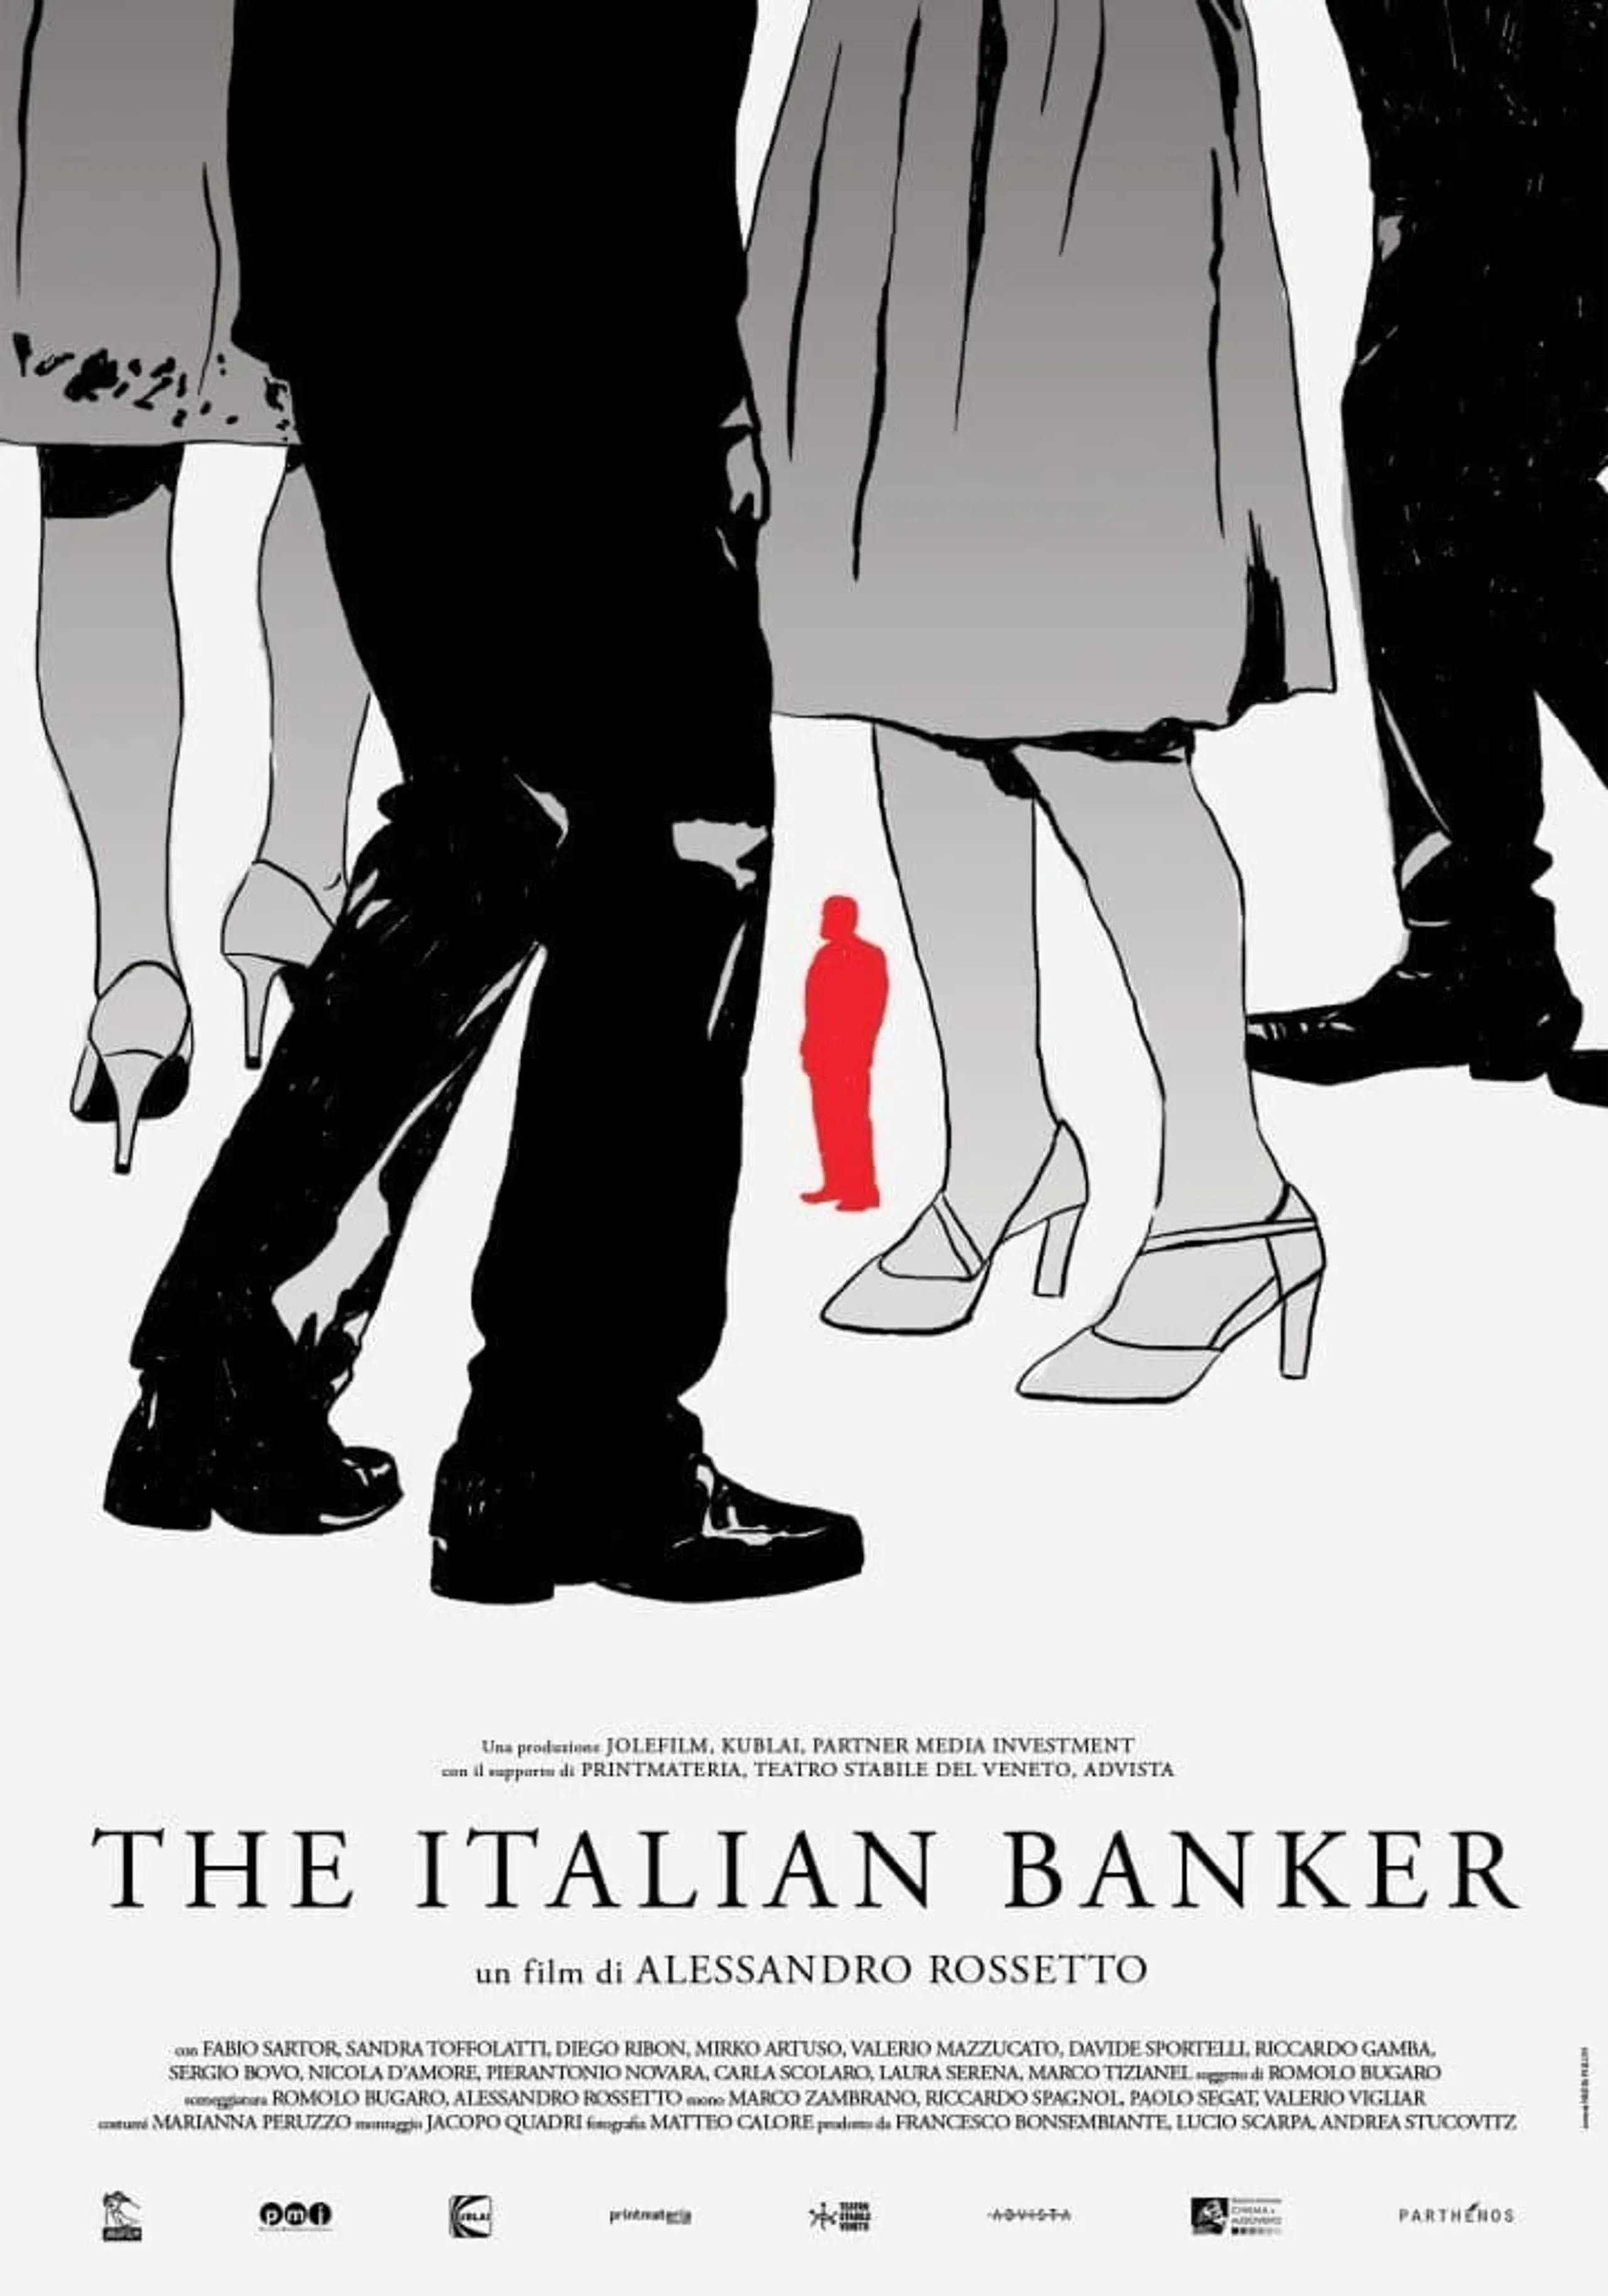 The Italian Banker